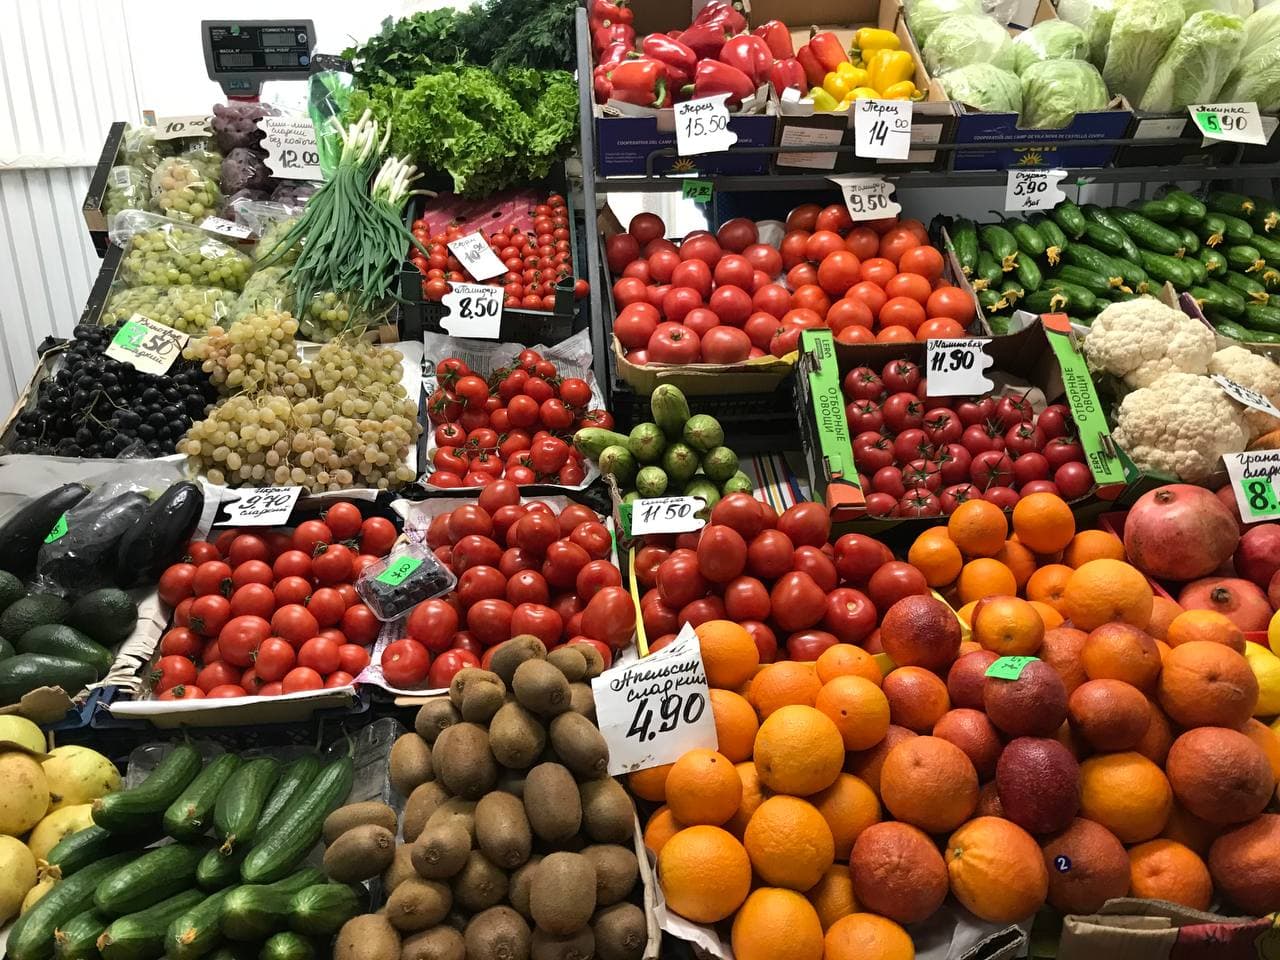 Помидоры за 13, авокадо - 5 рублей за штуку: по чем фрукты и овощи на гродненском рынке